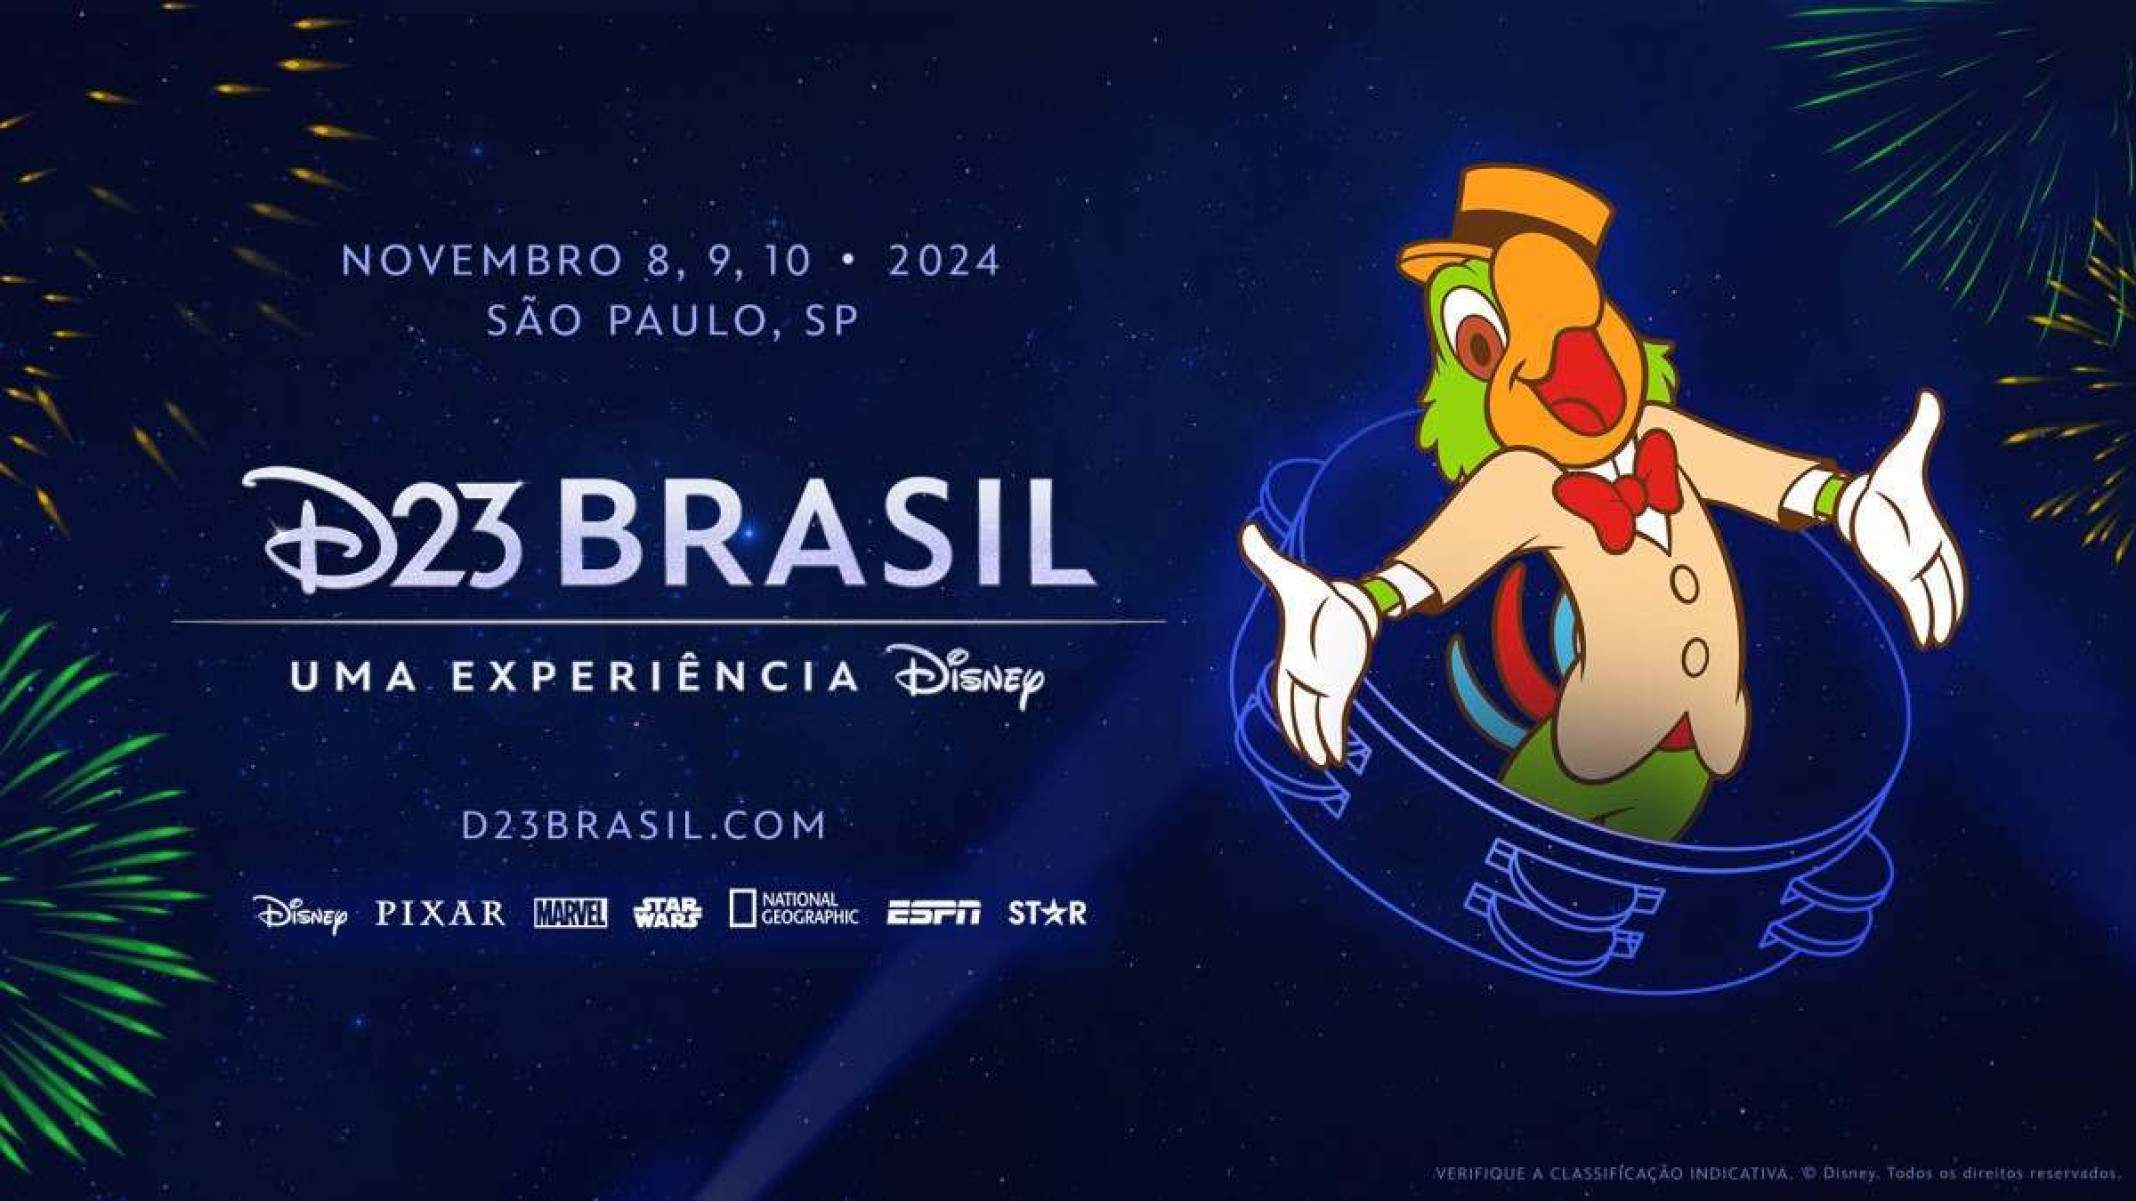 Disney anuncia ‘D23 Brasil - Uma experiência Disney’ para novembro